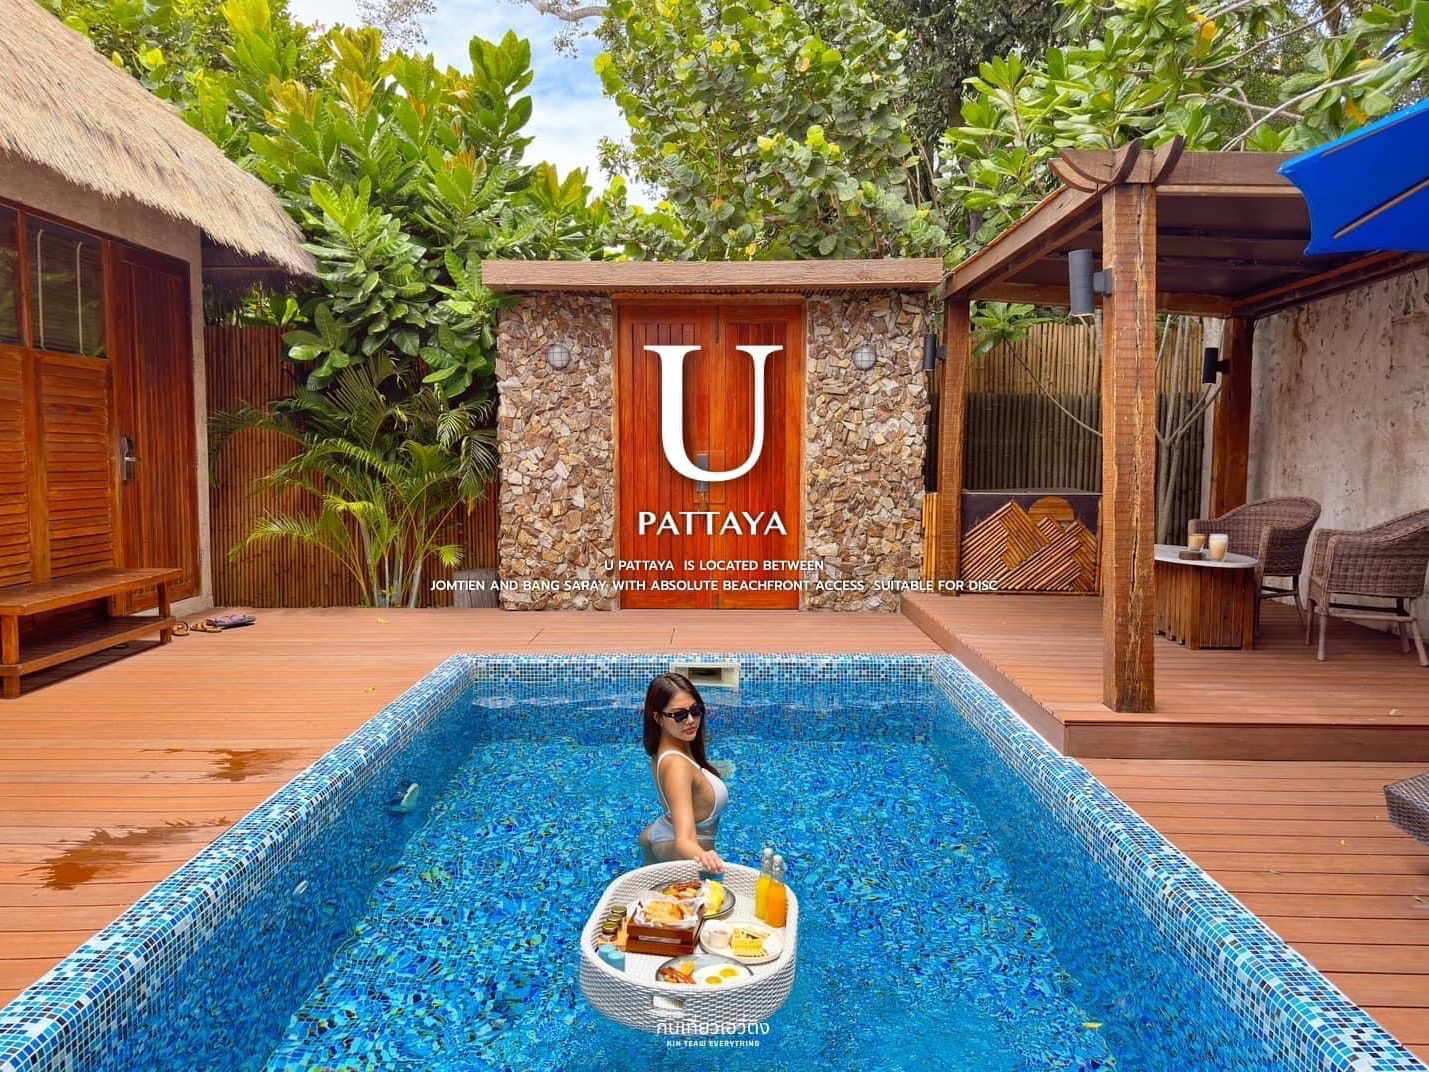 芭堤雅海滨酒店,最棒的U pattaya